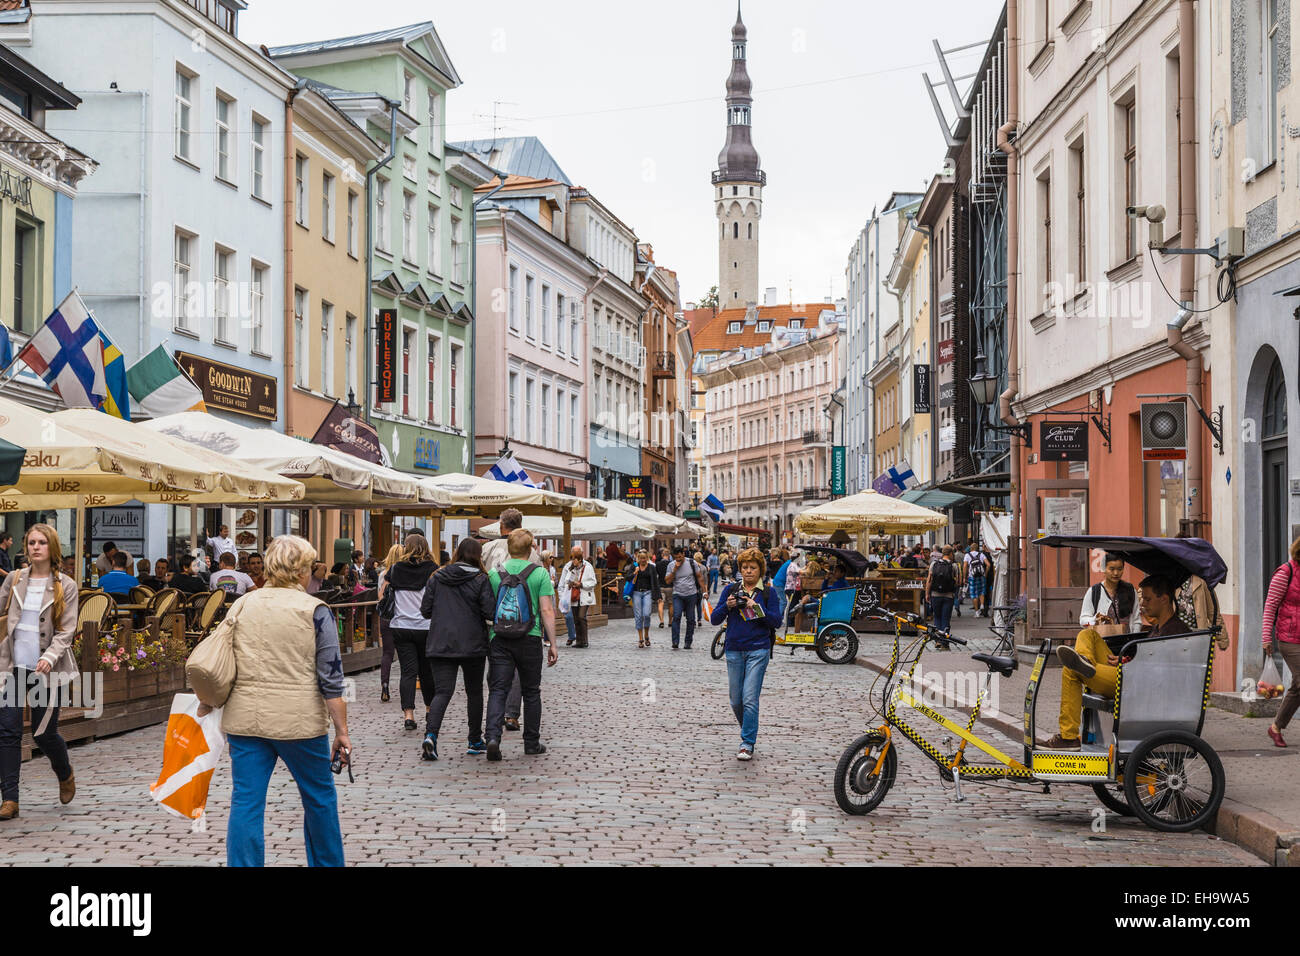 Valli street in city centre of Tallinn, Estonia Stock Photo